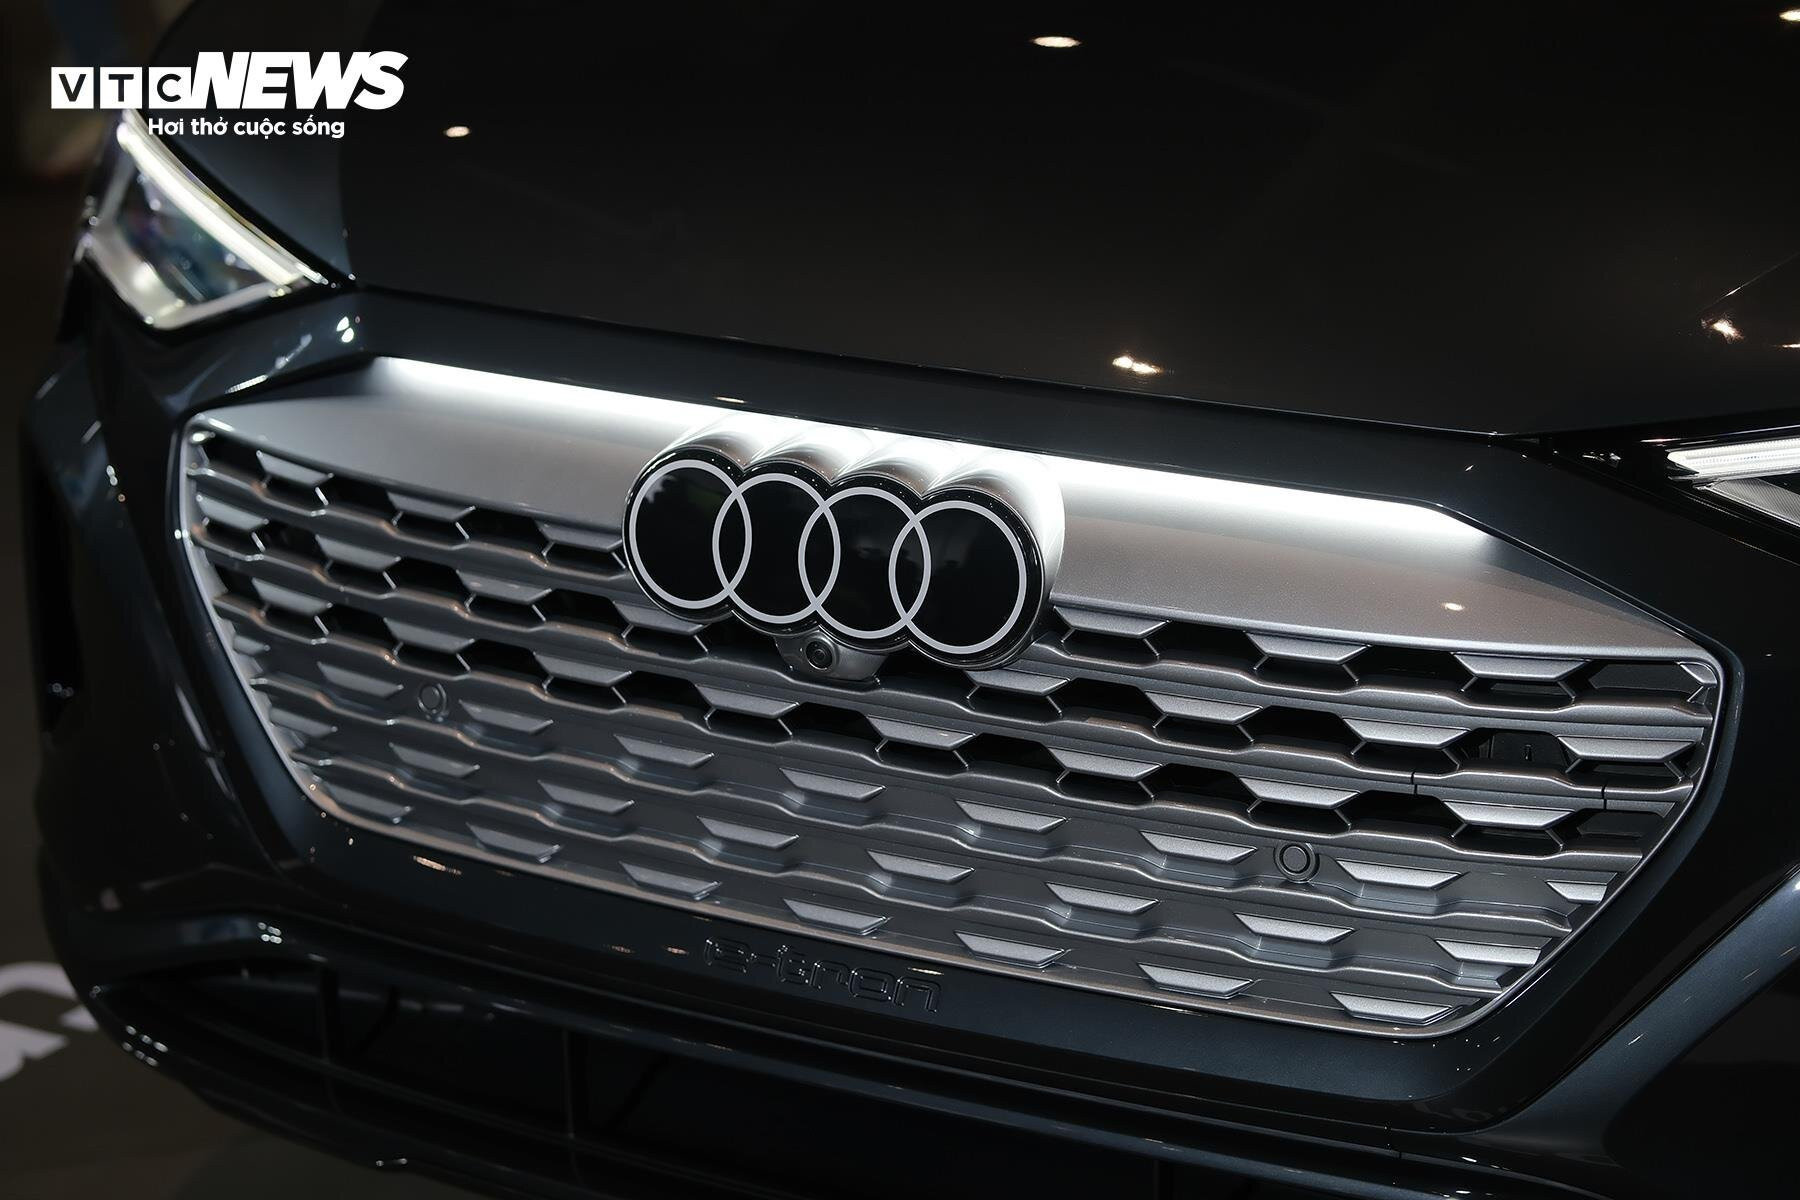 Cụm lưới tản nhiệt quen thuộc của Audi được tái thiết kế mang phong cách hiện đại hơn.